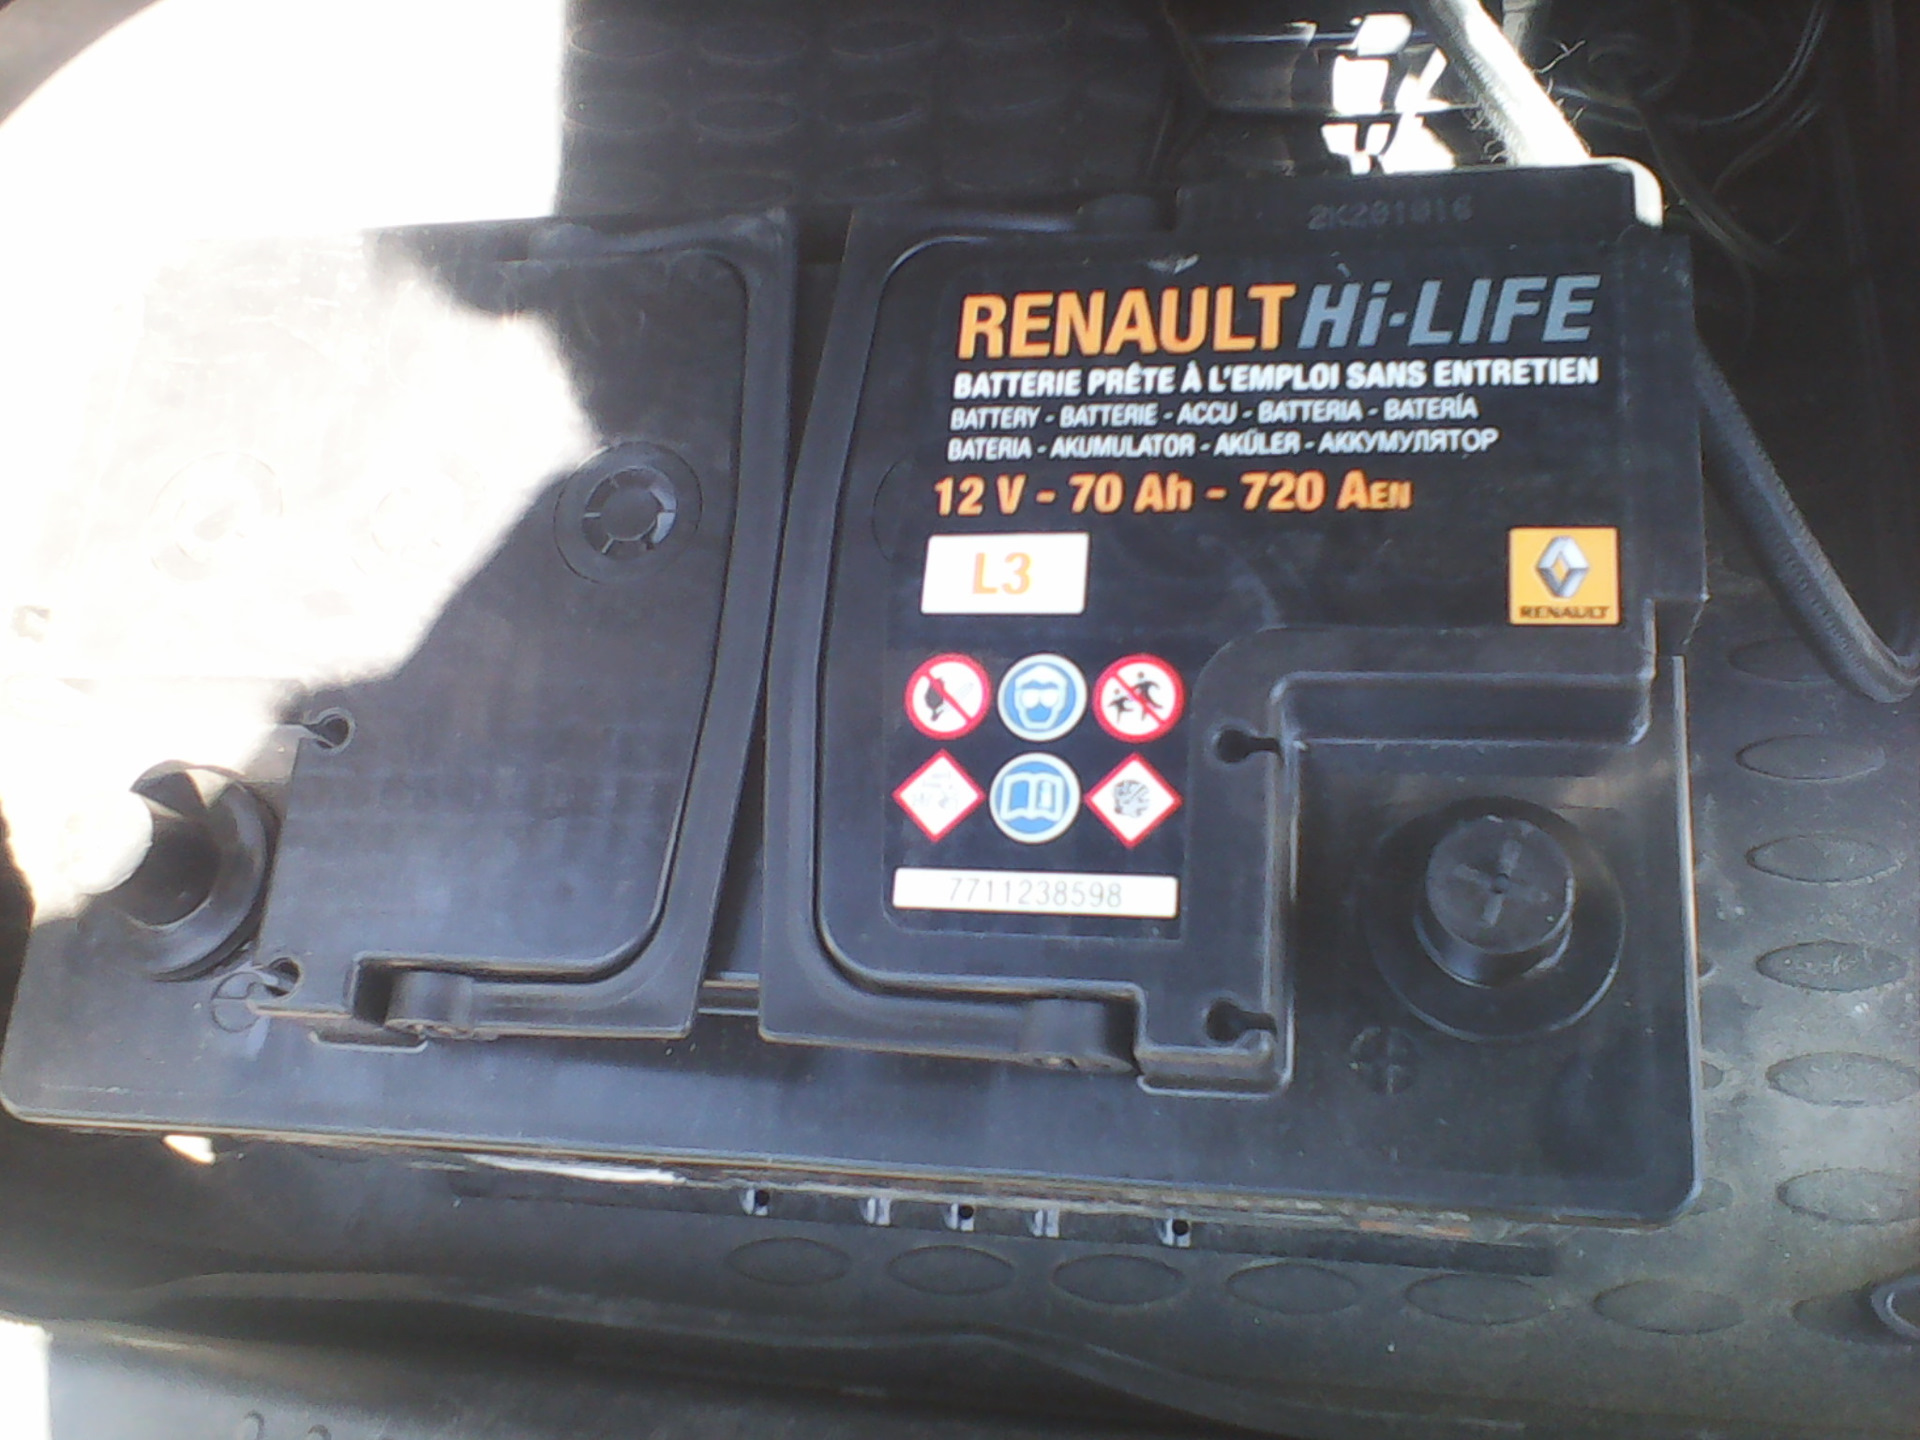 Аккумулятор рено оригинал. Аккумулятор Renault Hi-Life 12v 70ah. АКБ Рено Логан 2. АКБ Рено Логан 1.6 оригинал. Renault Hi-Life 12v 70ah 720a.